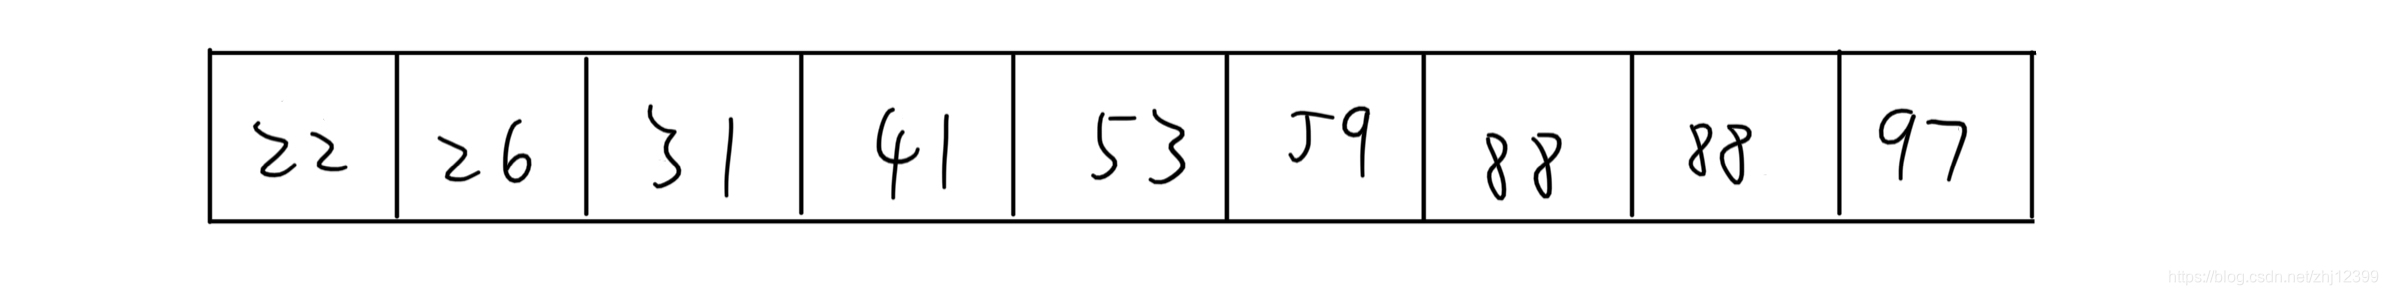 基数排序·静态-链式